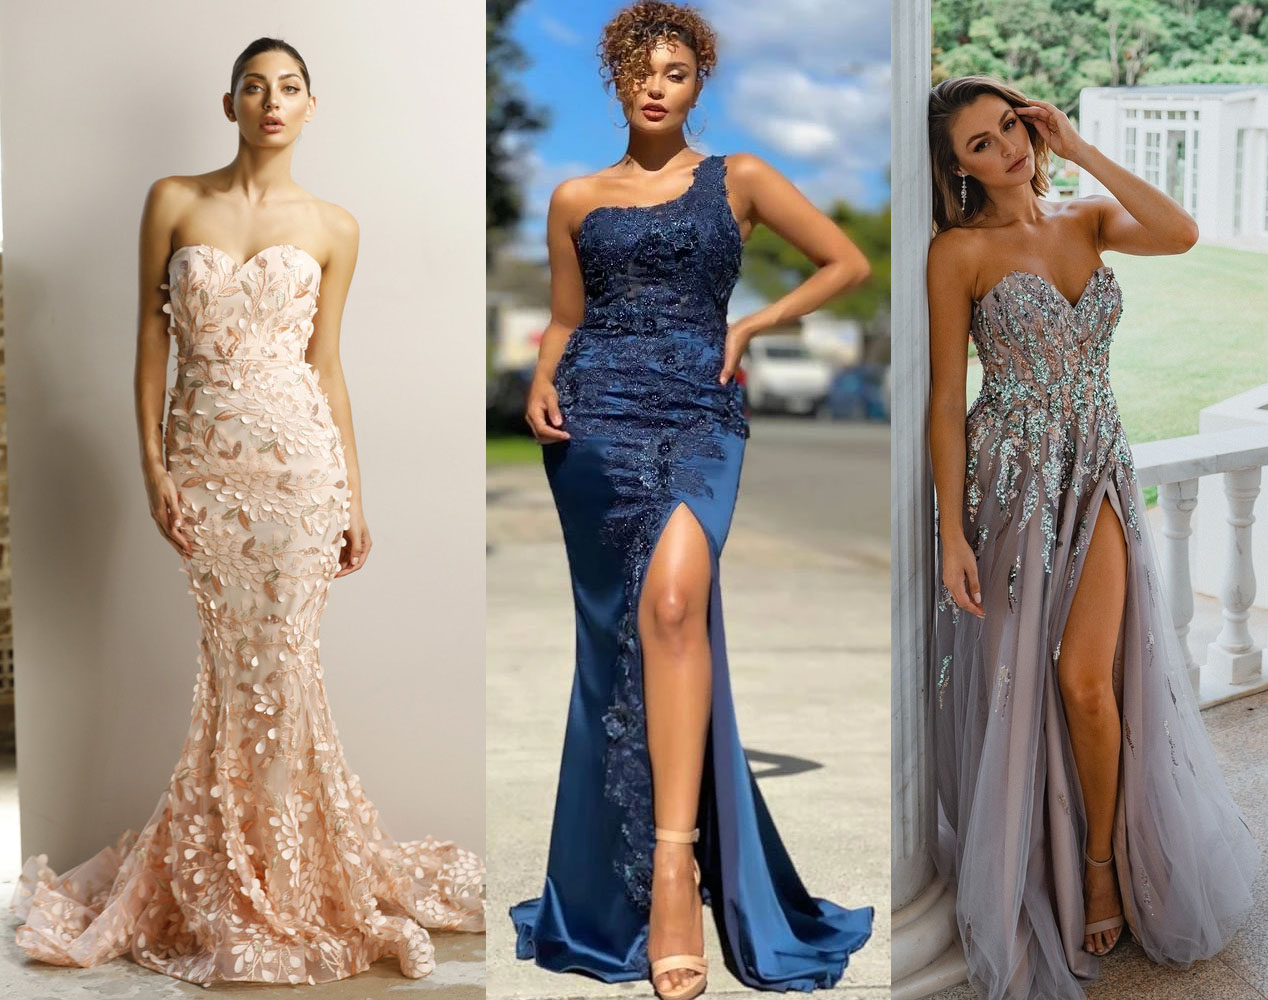 3D Embellished Sequin Applique Formal Dresses Online Australia- Fashionably Yours Bridal & Evening